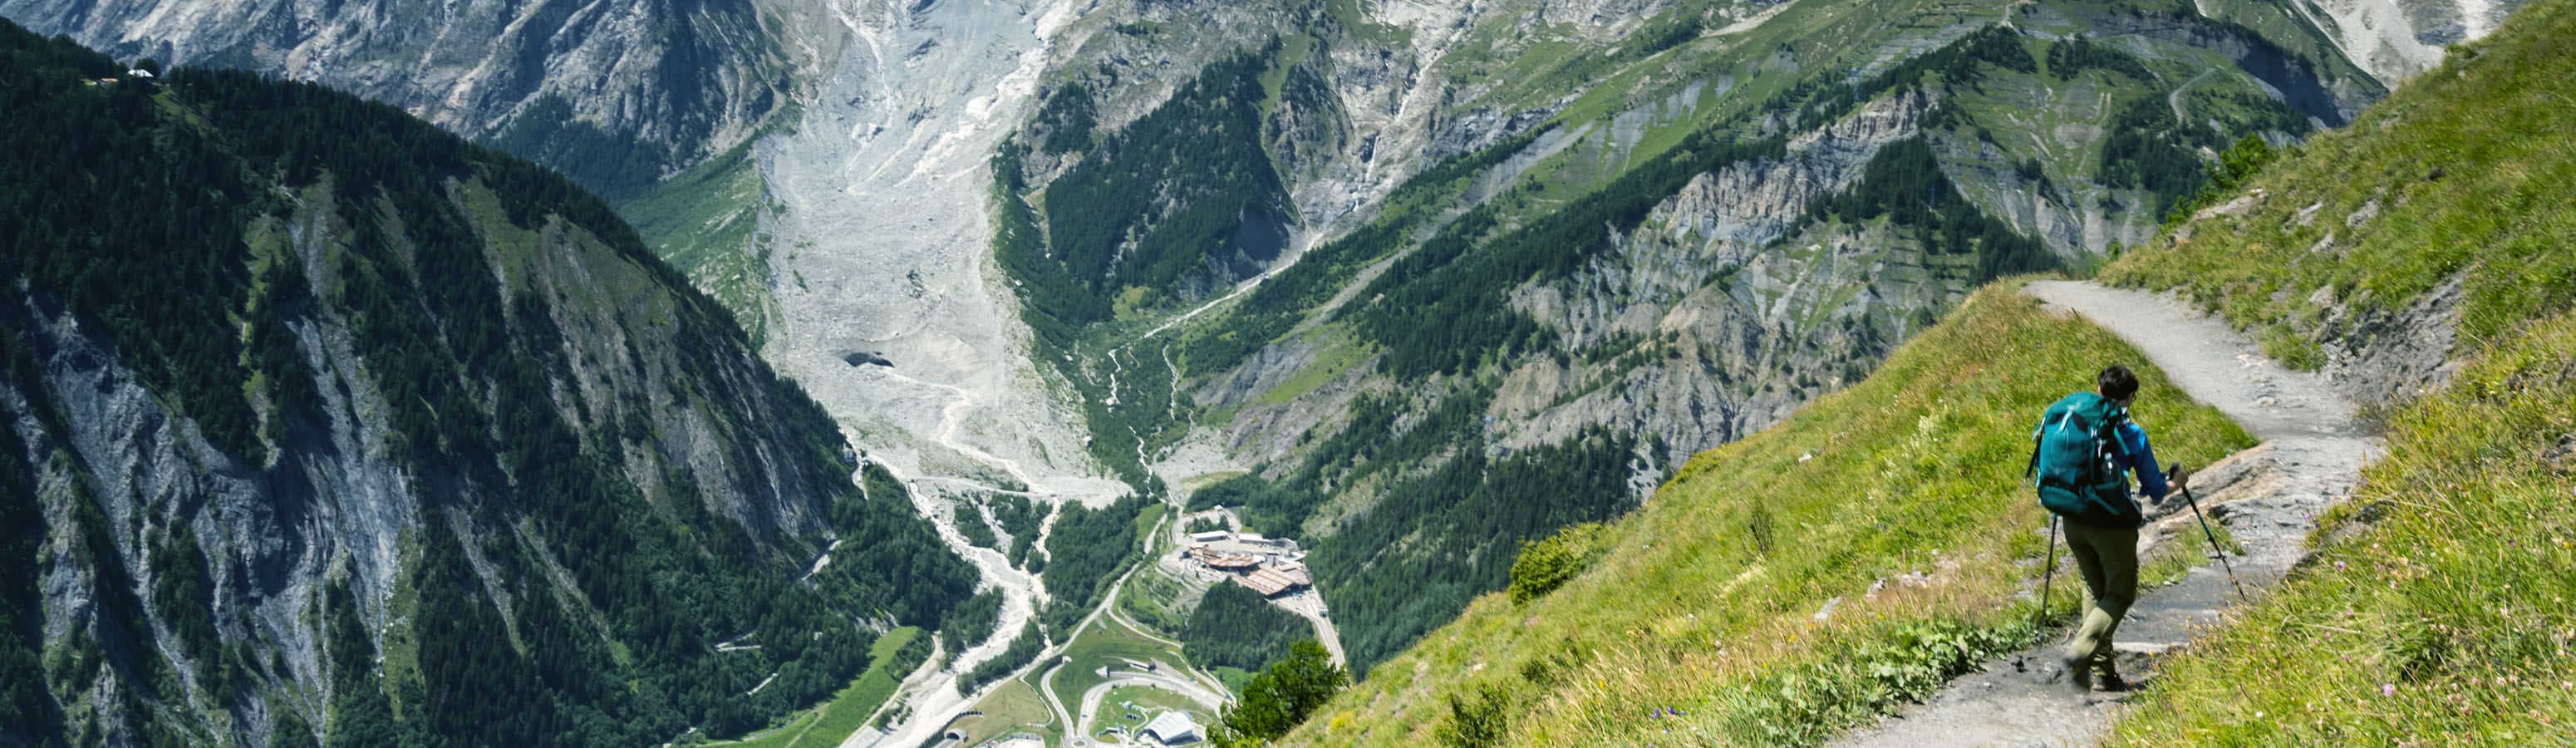 Кошки и решимость, будьте готовы подняться на Mt. Blanc